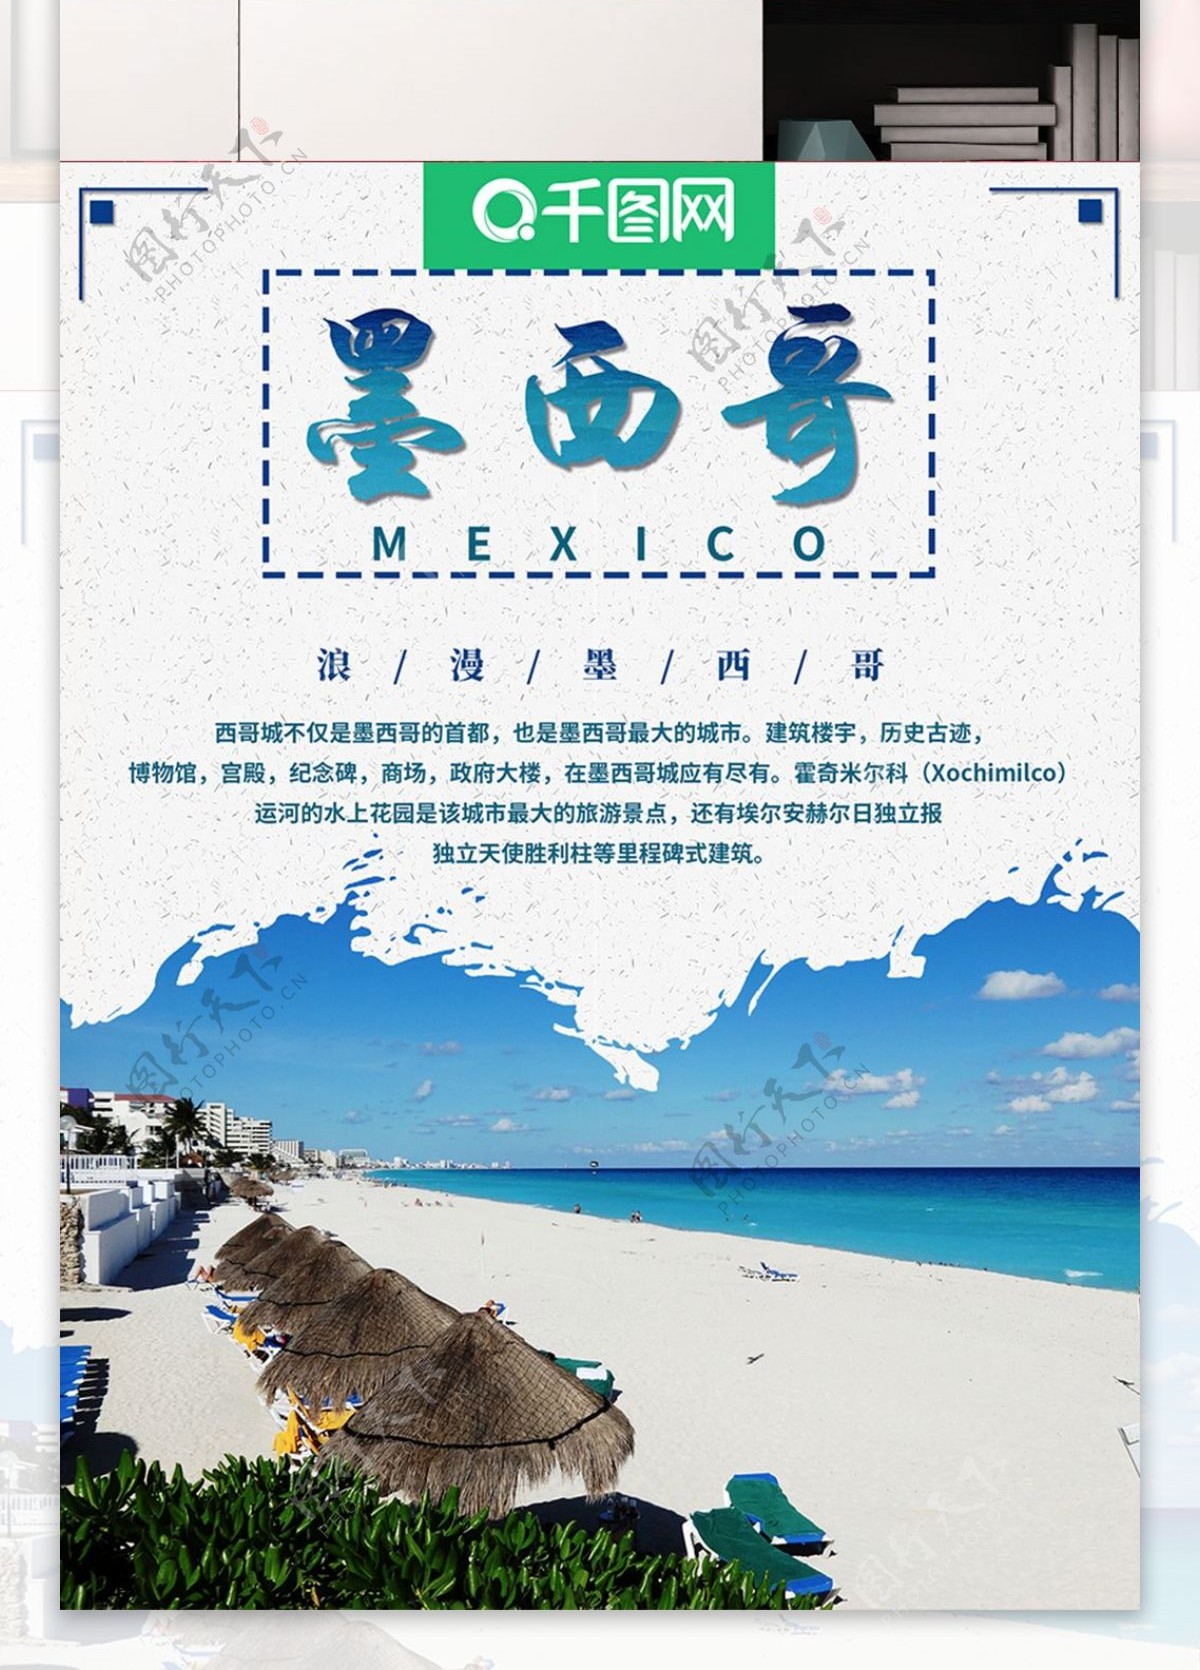 原创墨西哥旅游海报